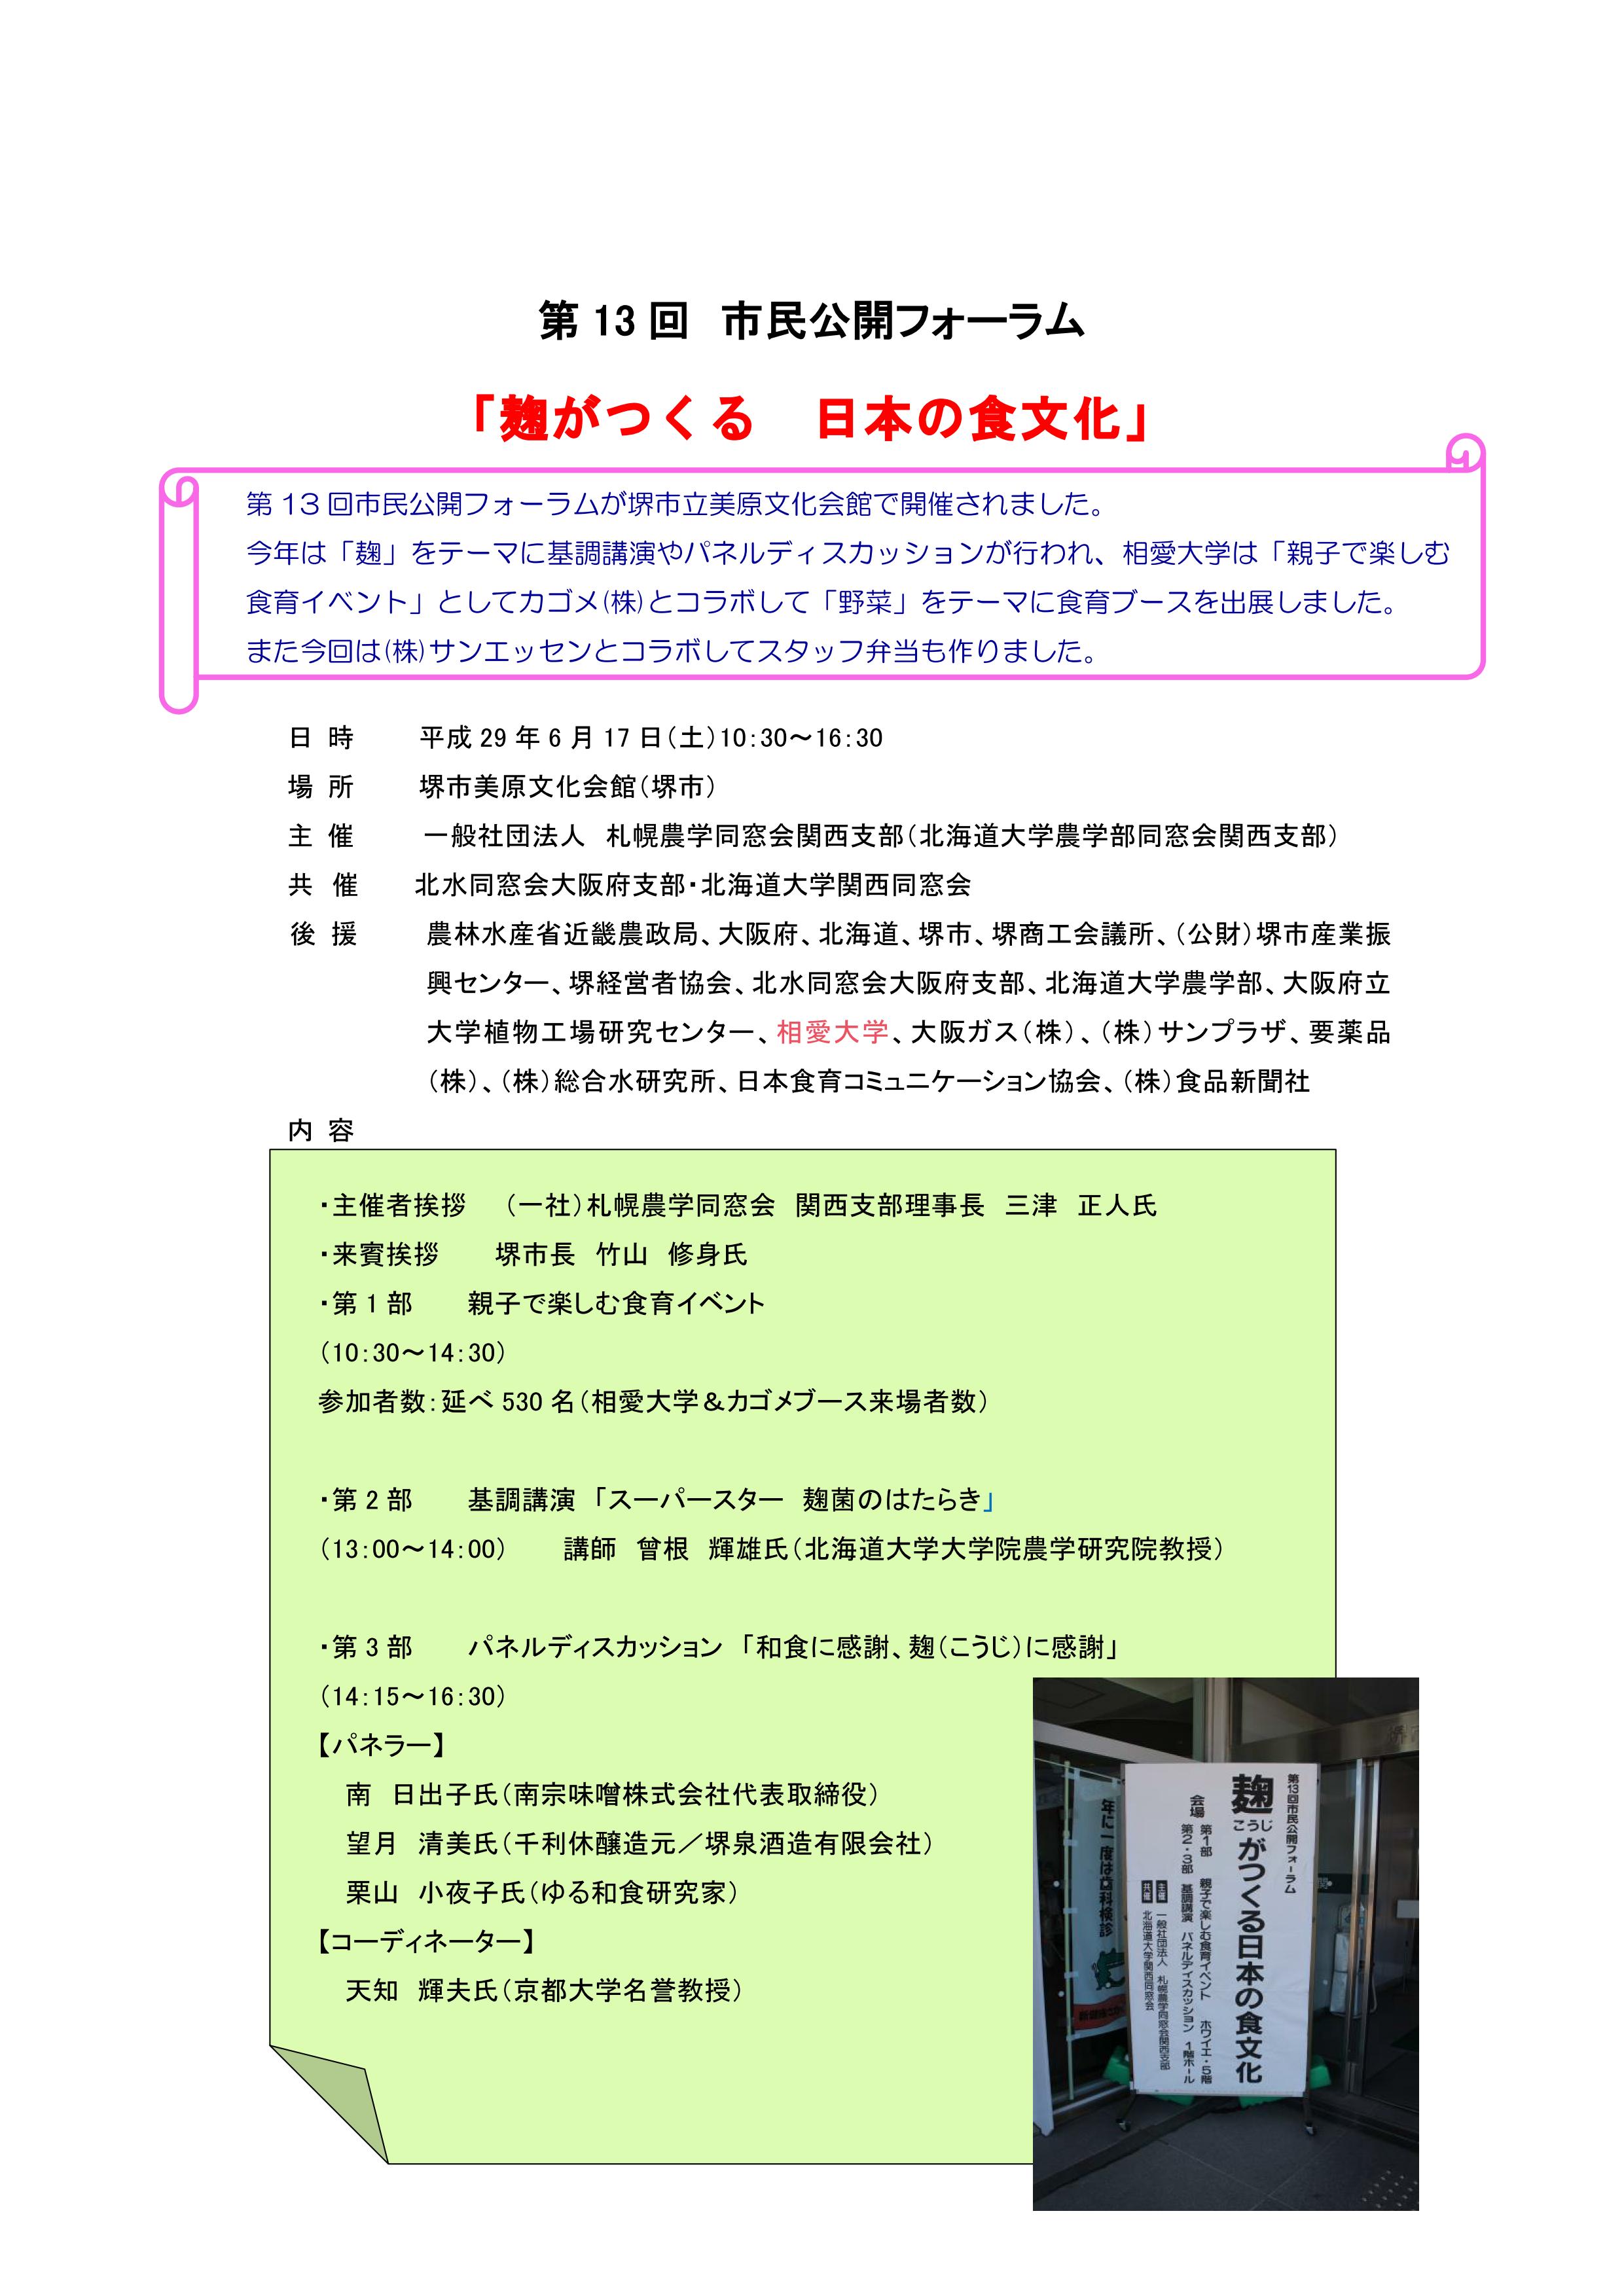 http://www.soai.ac.jp/information/learning/simin-forum0617_00.jpg